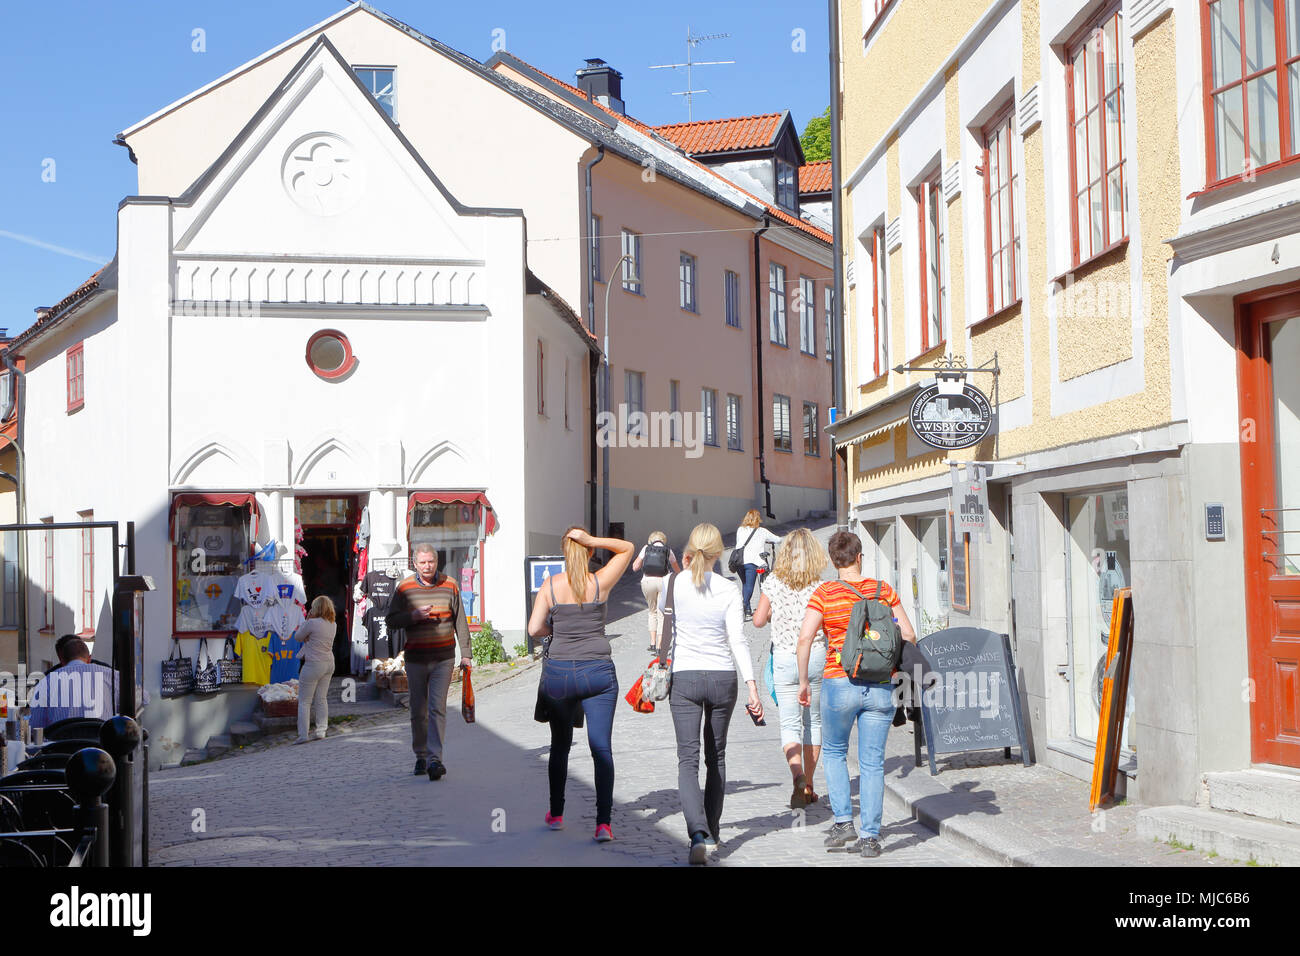 Visby, Svezia - 12 Maggio 2016: il luogo Wallers posizione nel centro cittadino di Visby con peopele camminando per le strade strette. Foto Stock